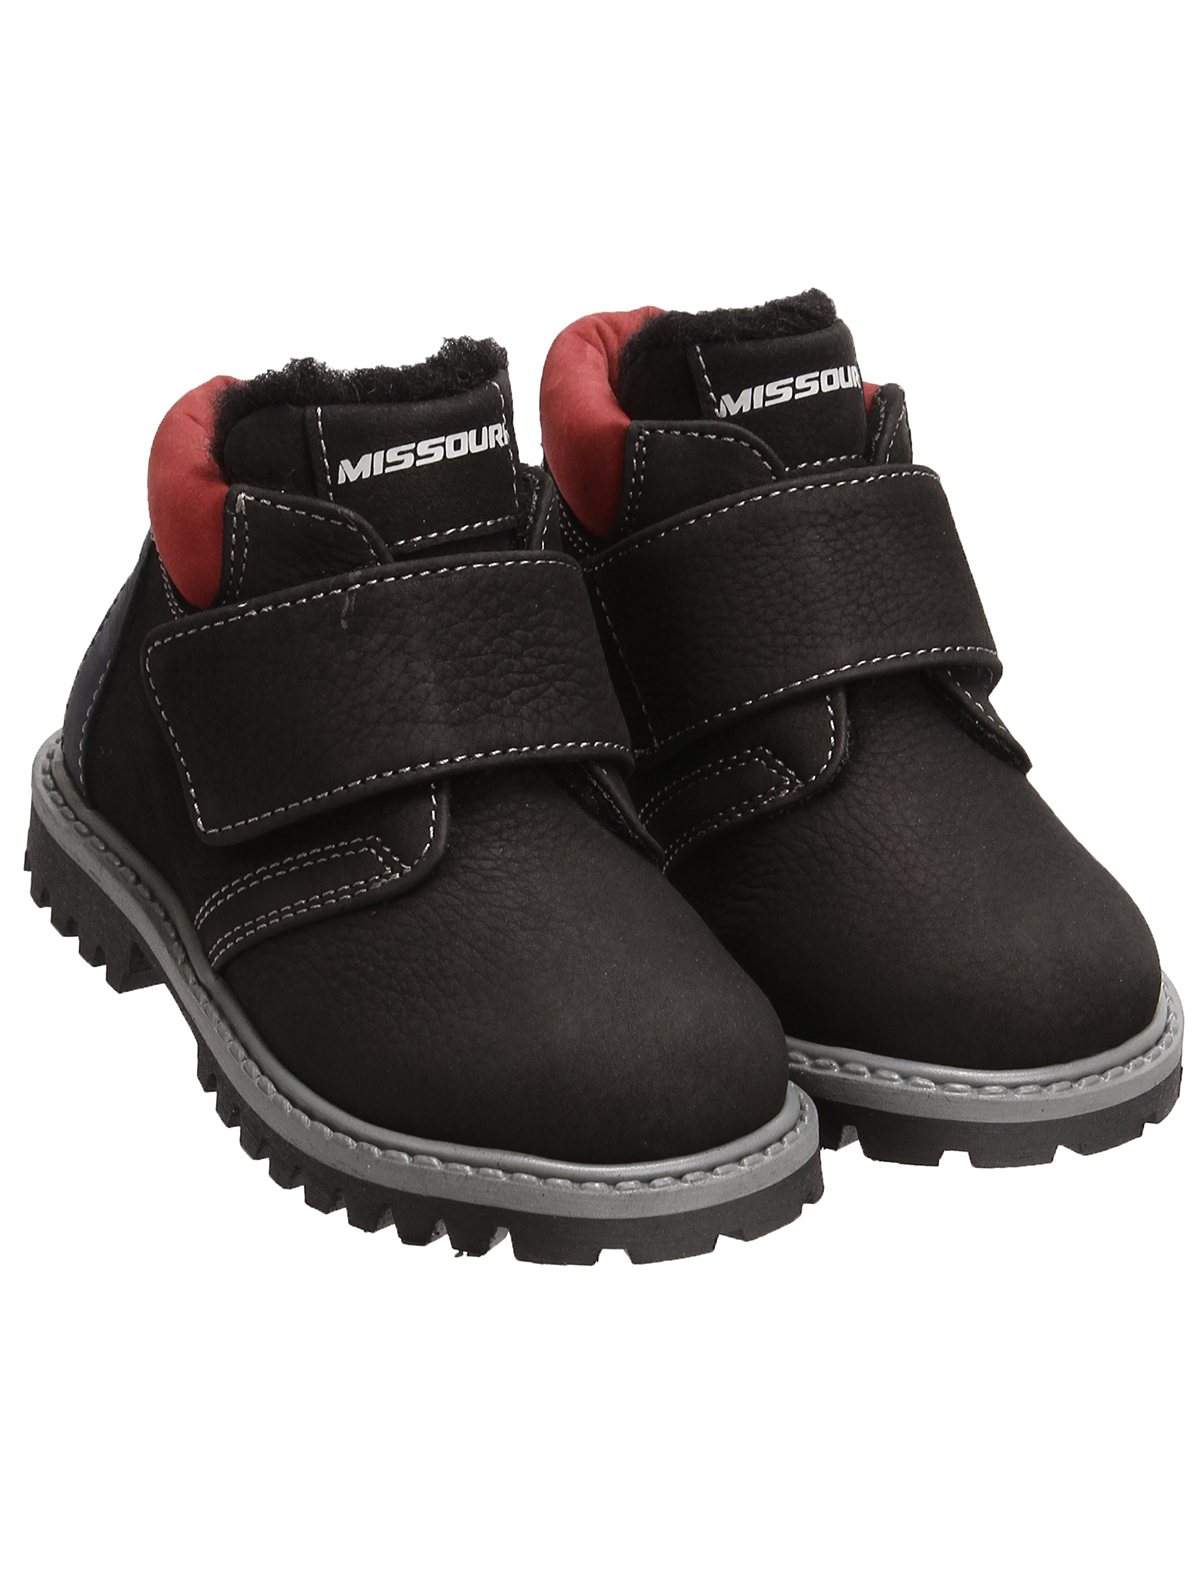 Ботинки Missouri 2480863, цвет черный, размер 22 2034519281351 - фото 1